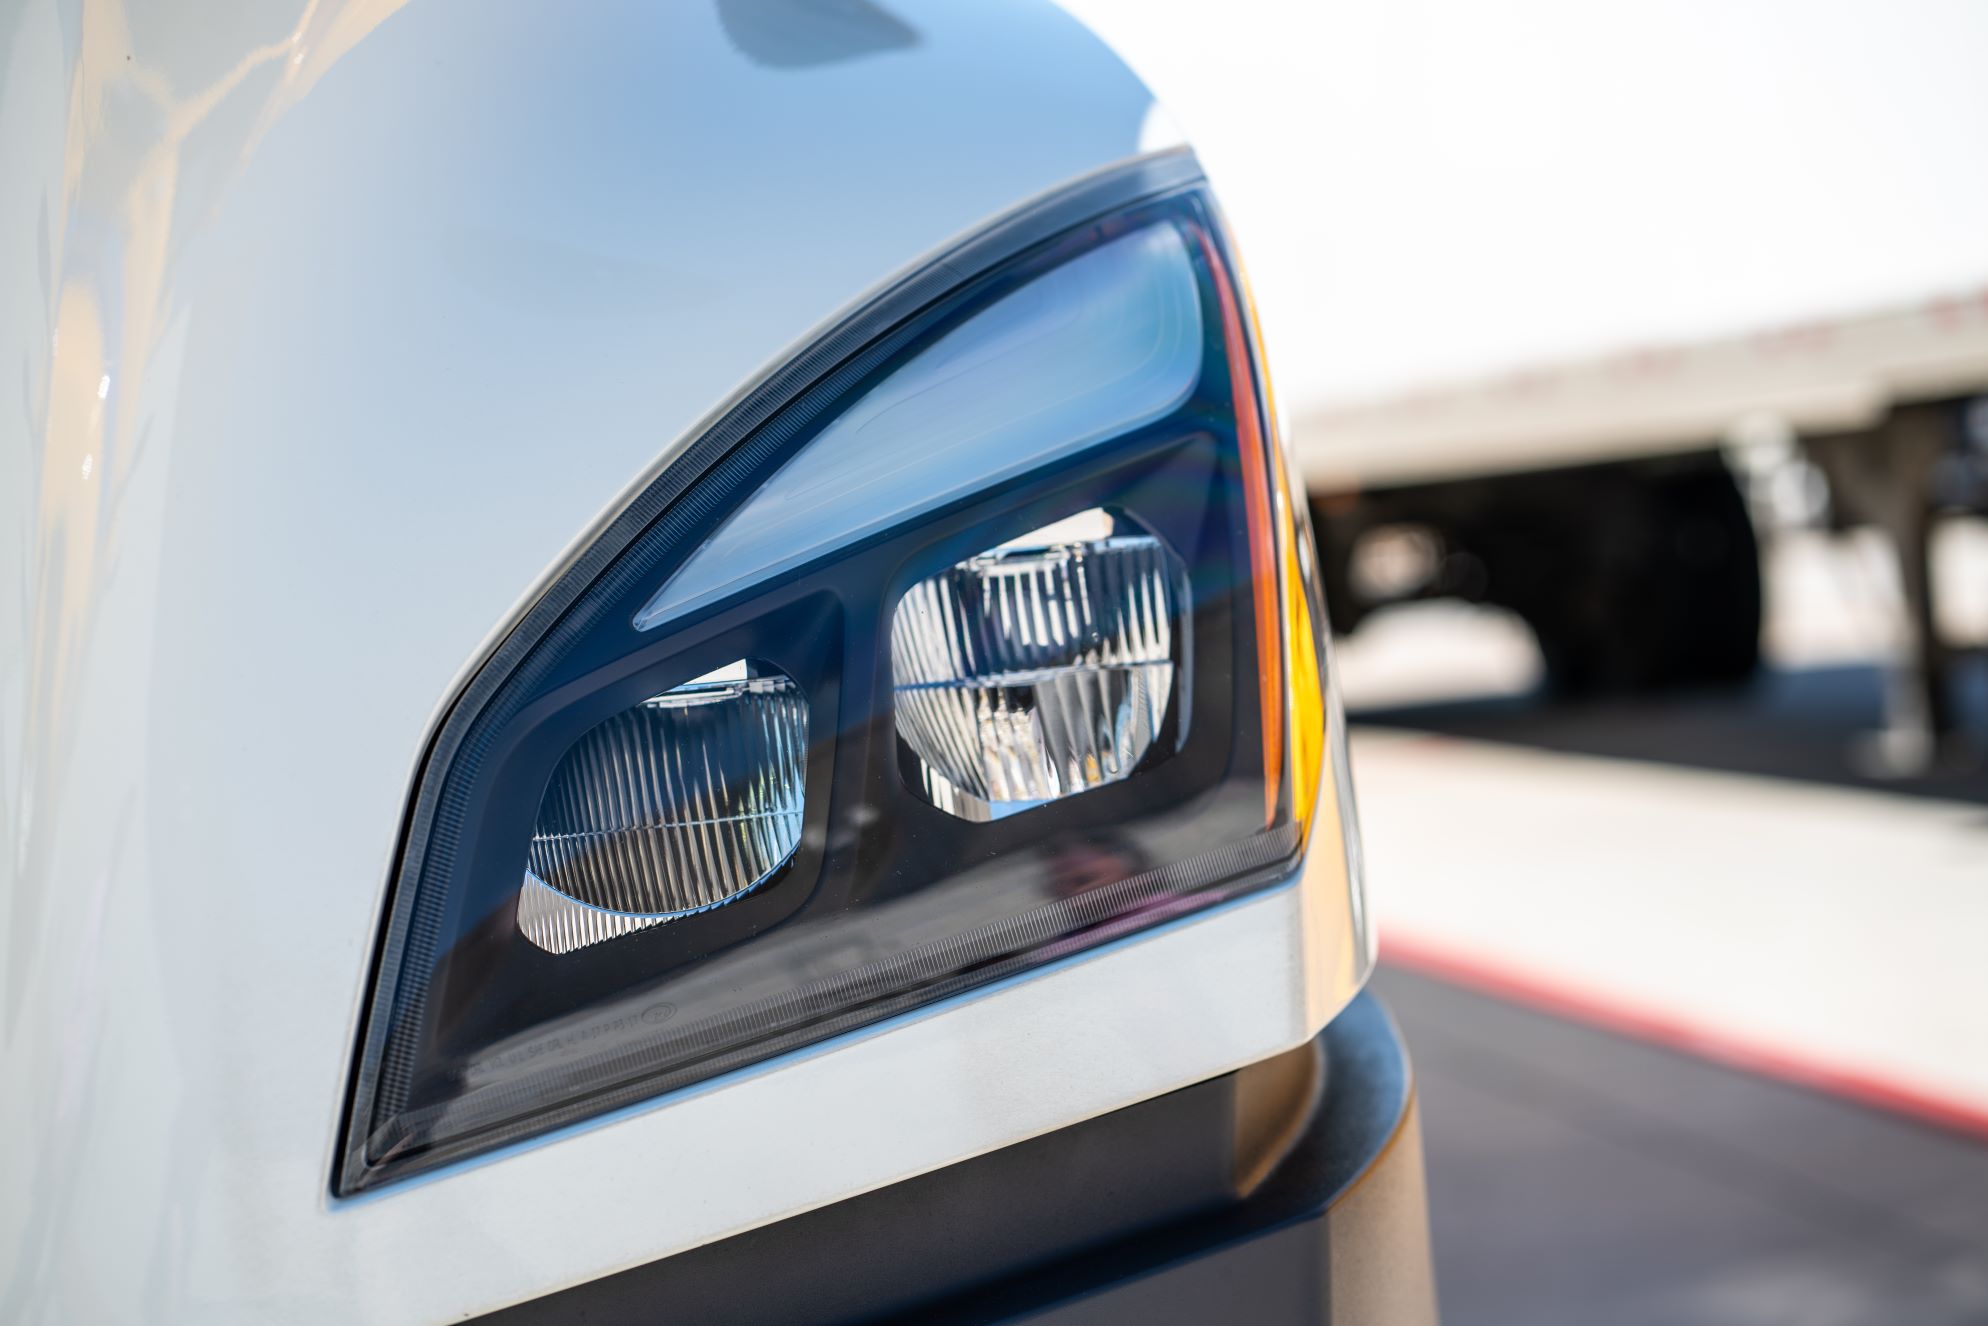 A close-up shot of a truck headlight